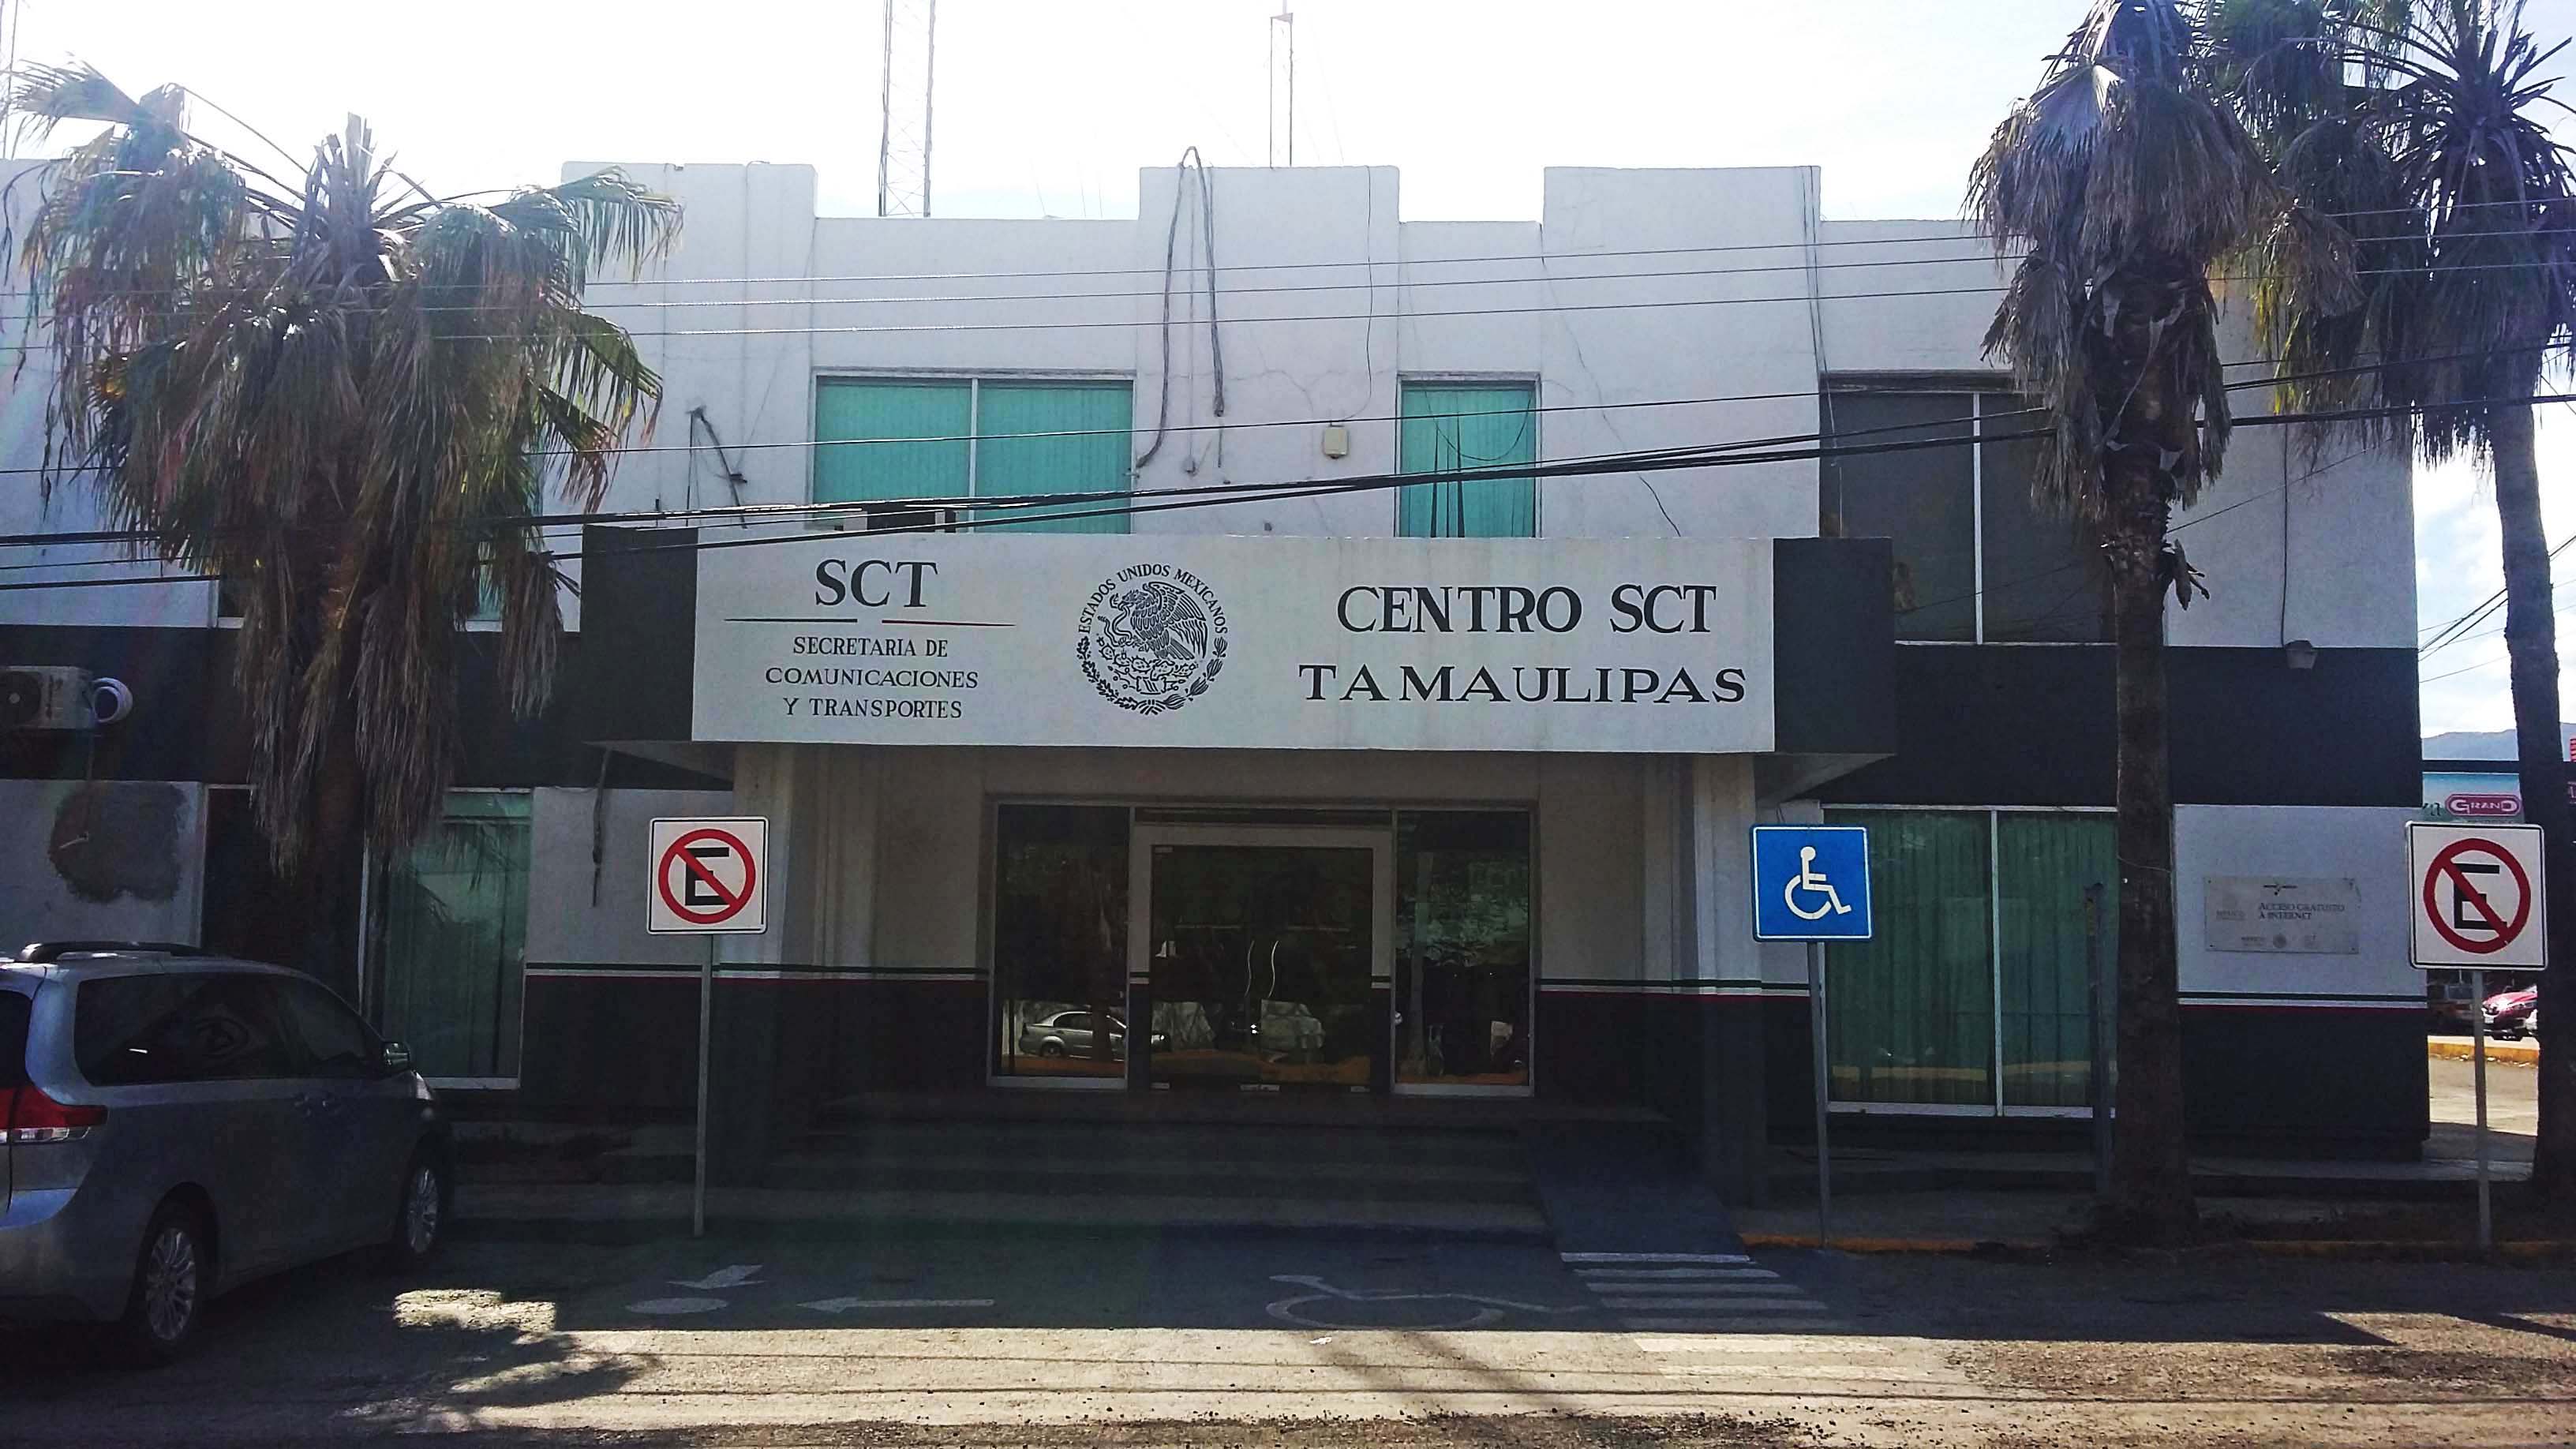 Centro SCT Tamaulipas